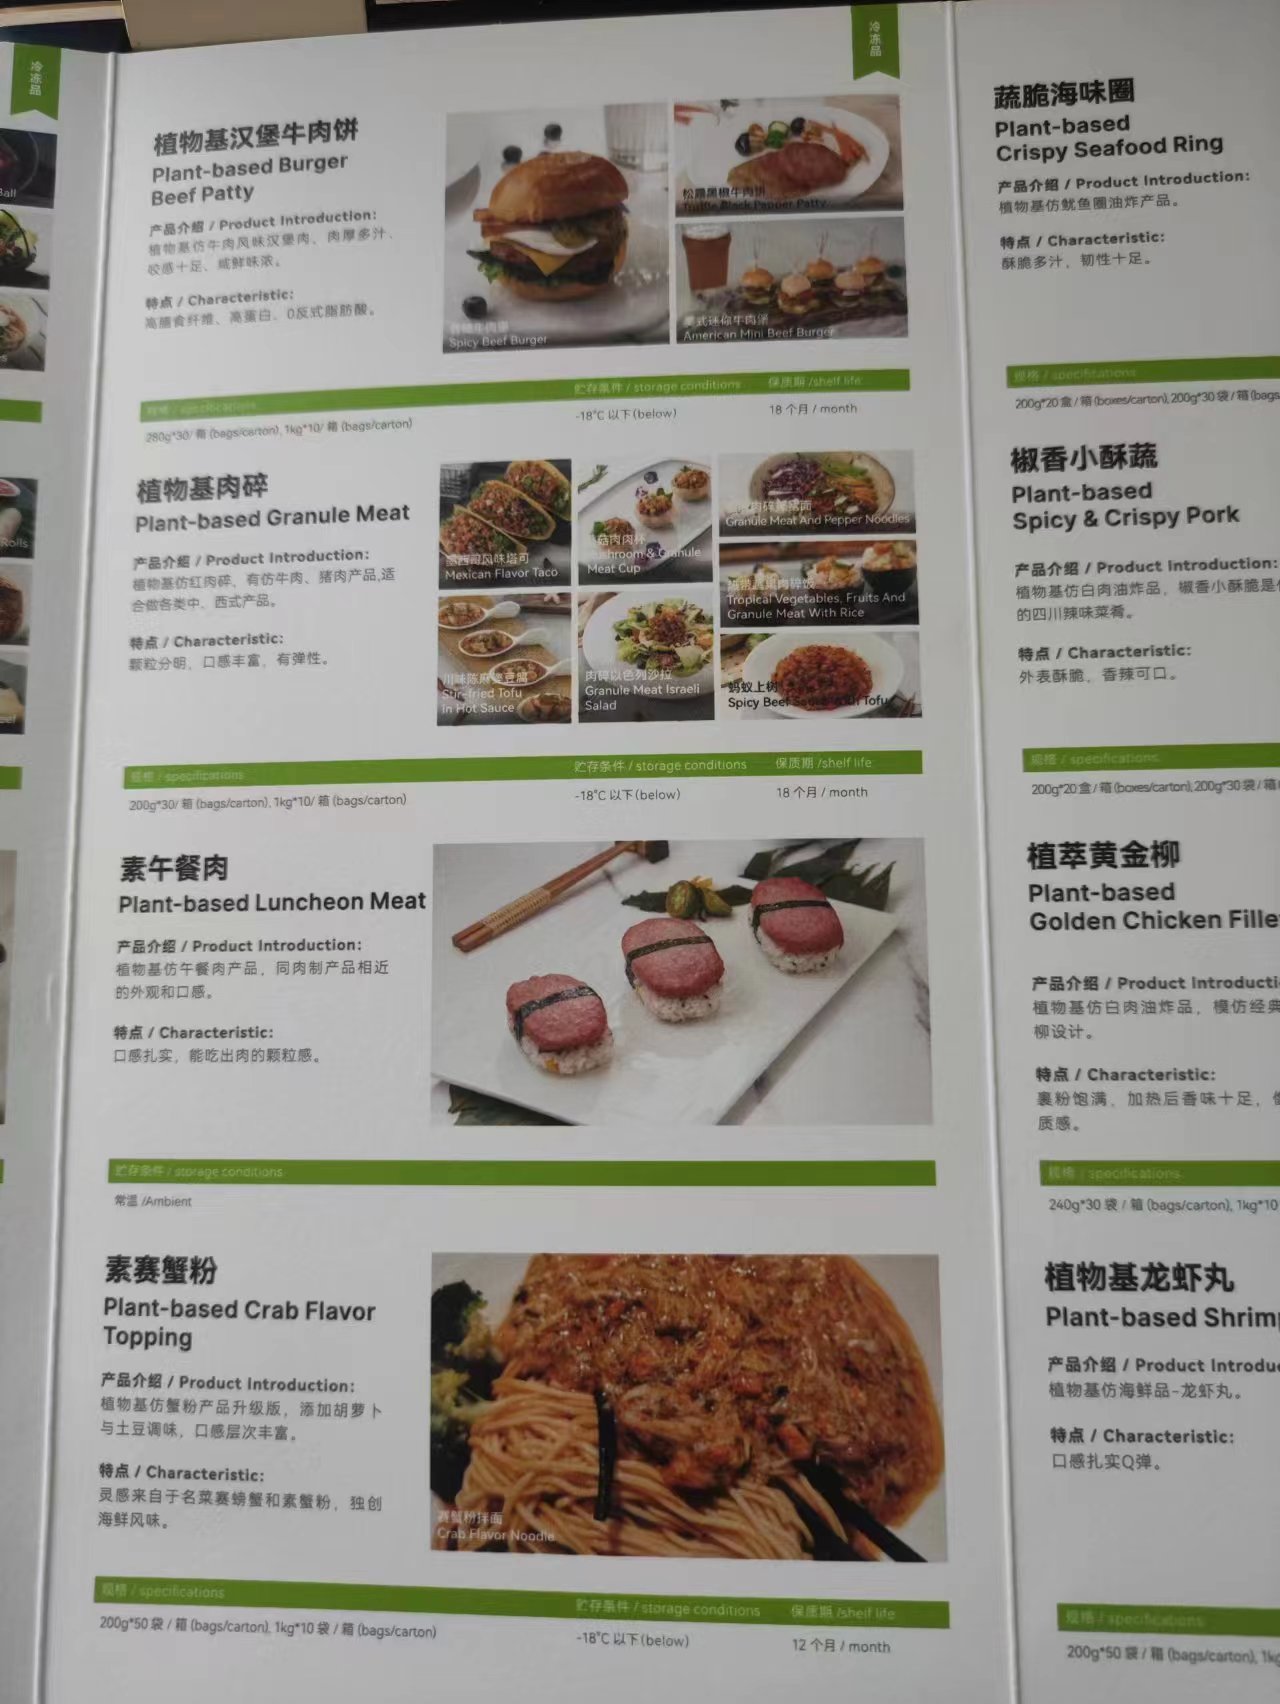 米特加食品（上海）有限公司提供植物蛋白食品（植物肉/素肉产品）招商服务